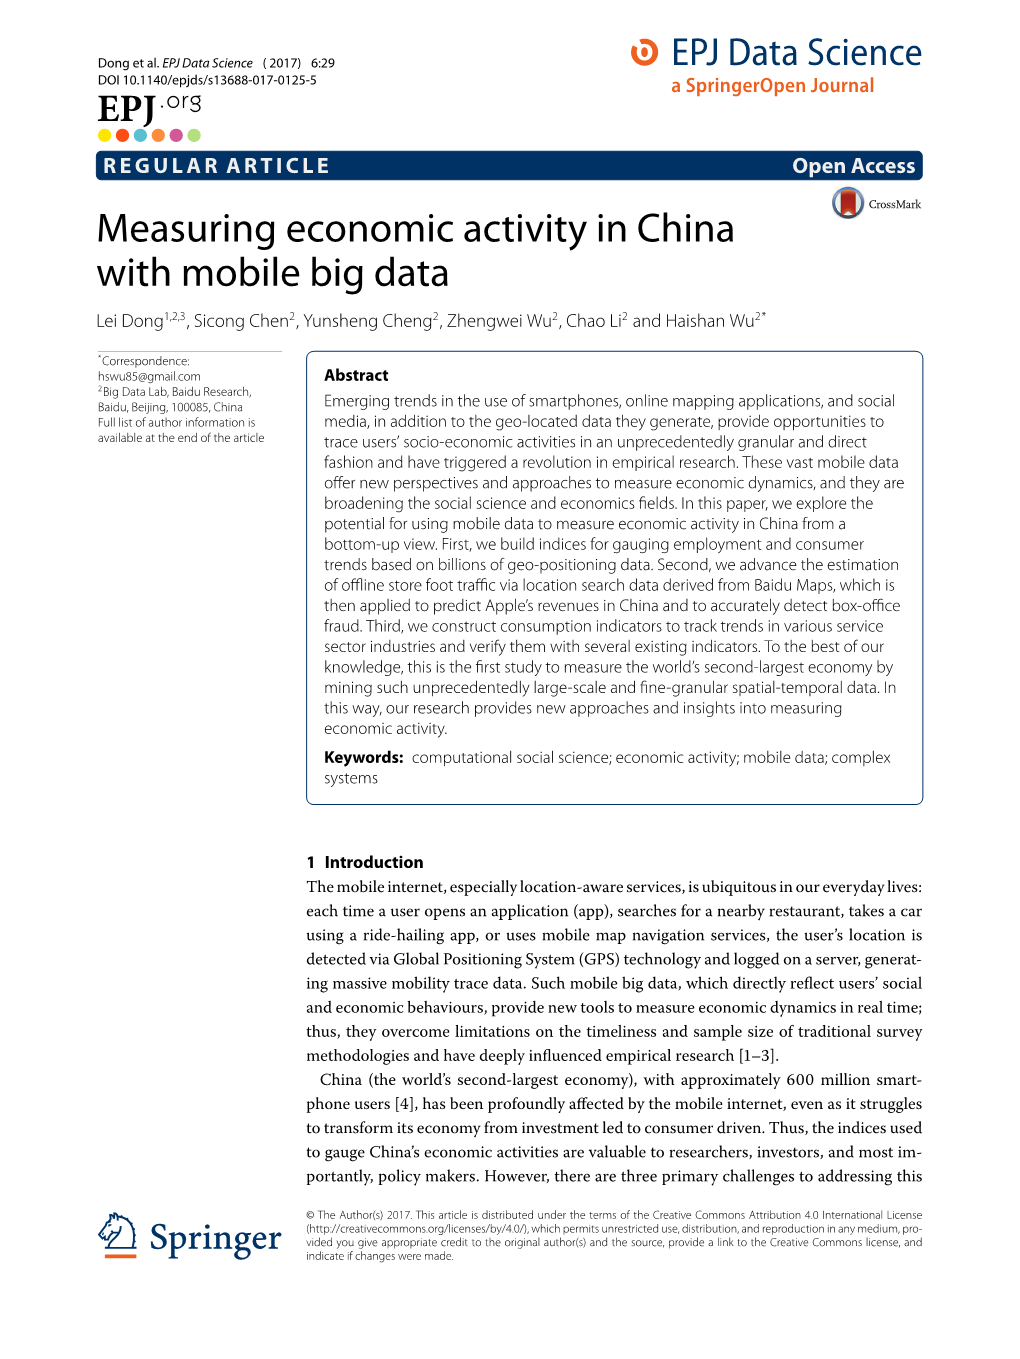 Measuring Economic Activity in China with Mobile Big Data Lei Dong1,2,3, Sicong Chen2, Yunsheng Cheng2, Zhengwei Wu2,Chaoli2 and Haishan Wu2*